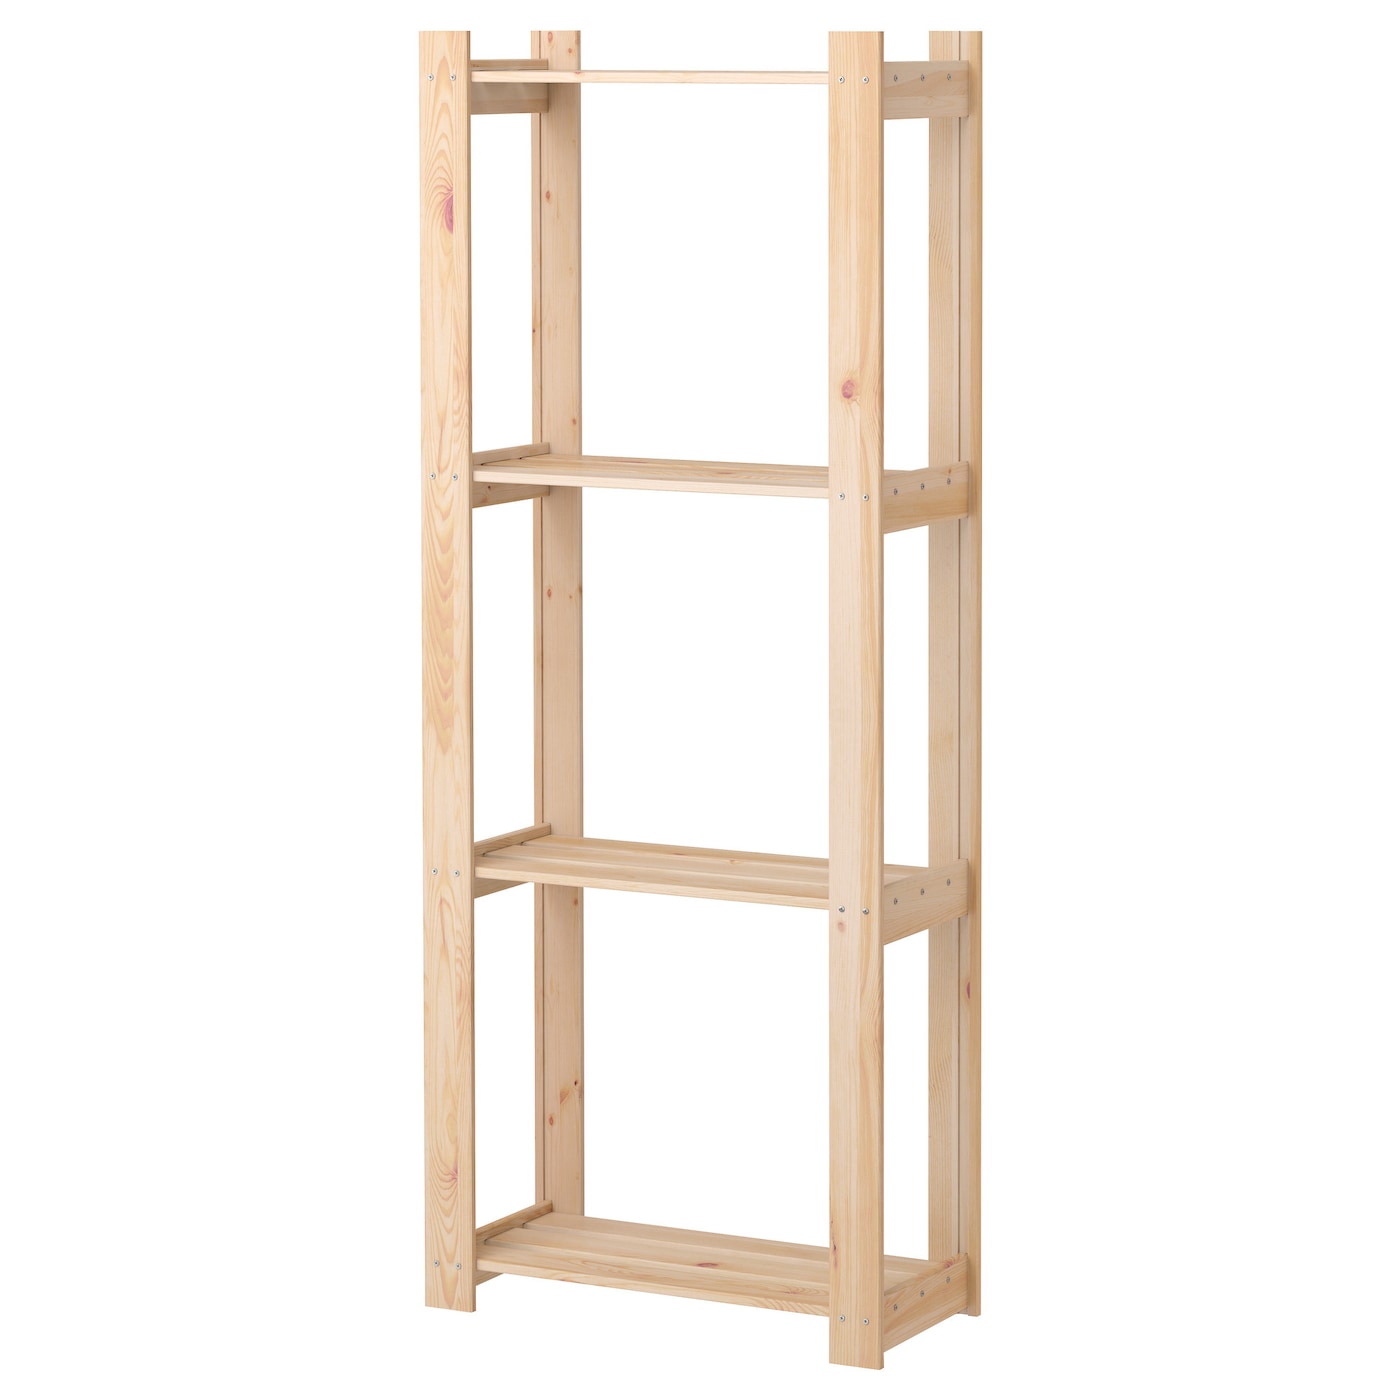 Книжный шкаф - ALBERT IKEA/ АЛЬБЕРТ ИКЕА, 159х64 см, под беленый дуб